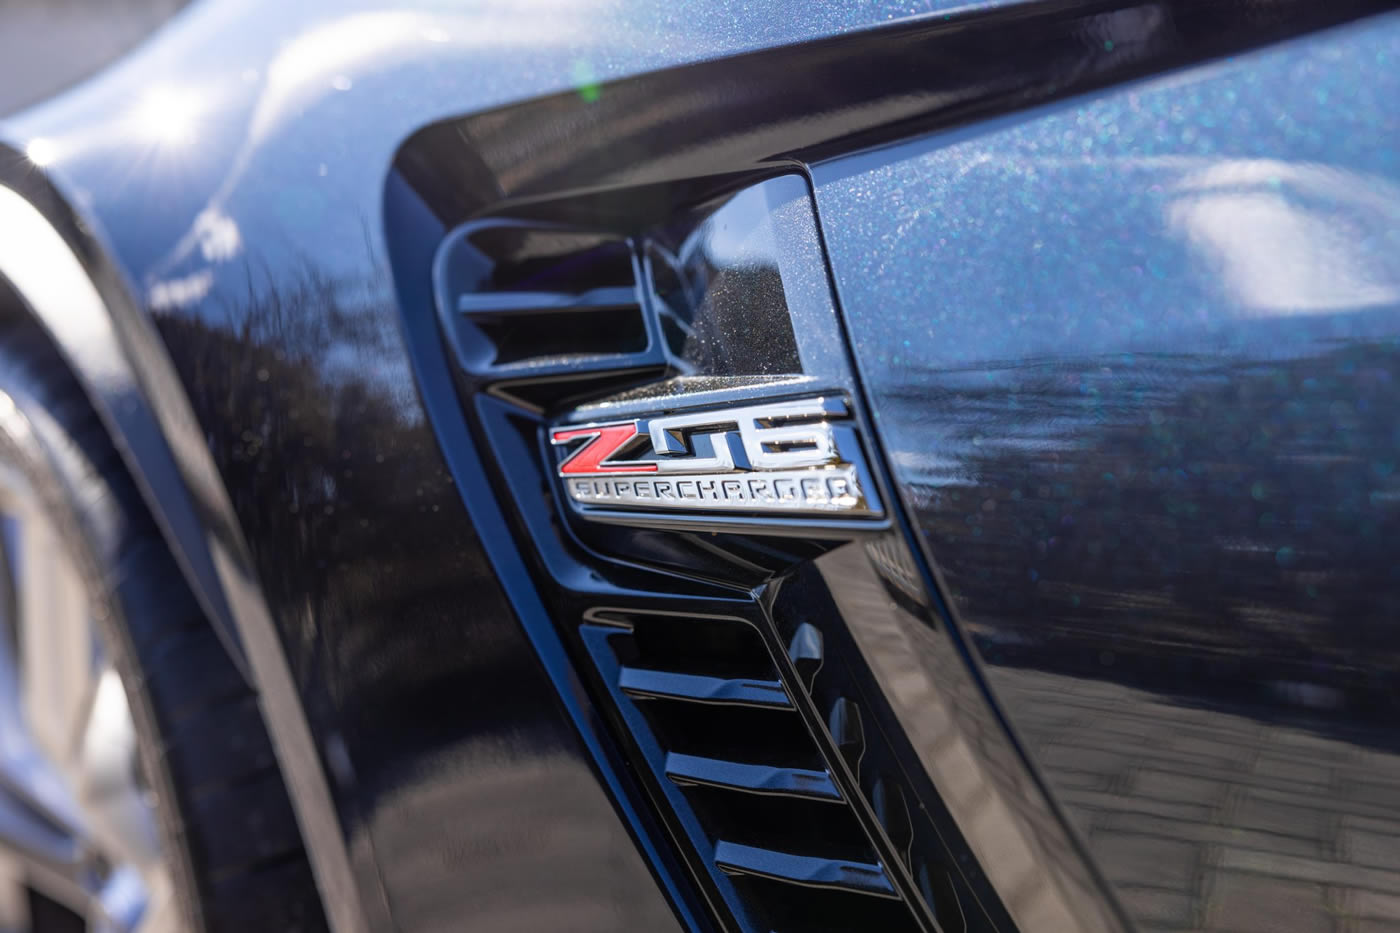 2016 Corvette Z06 Coupe 3LZ in Night Race Blue Metallic